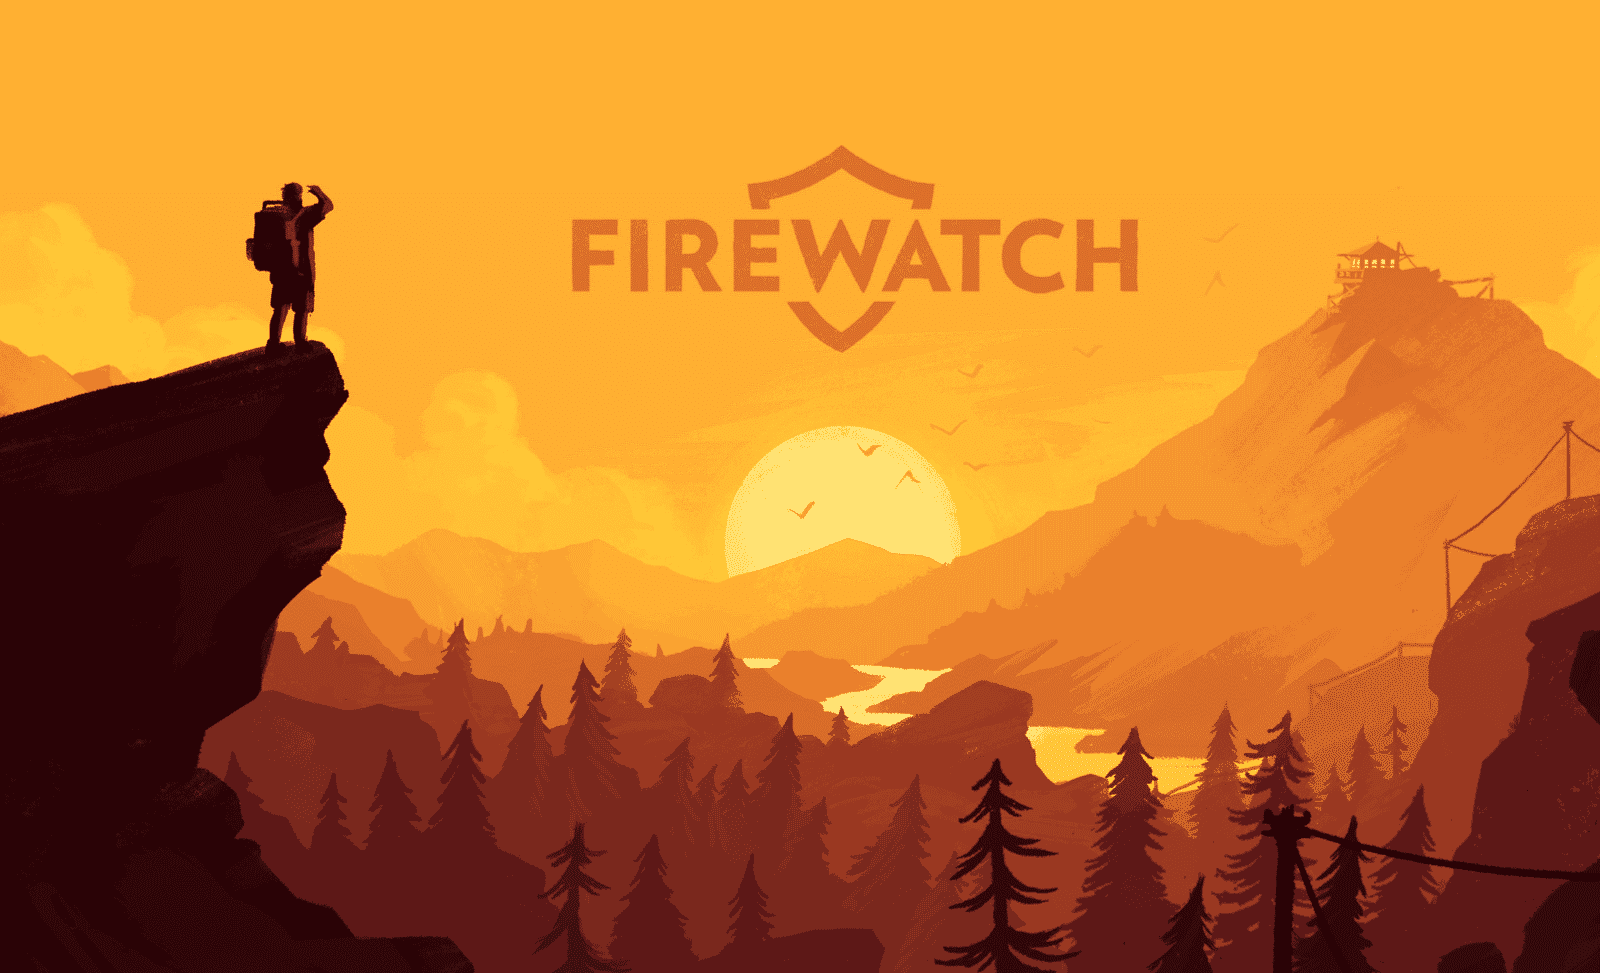 [Act.] Firewatch se estrena el 17 de diciembre en Nintendo Switch